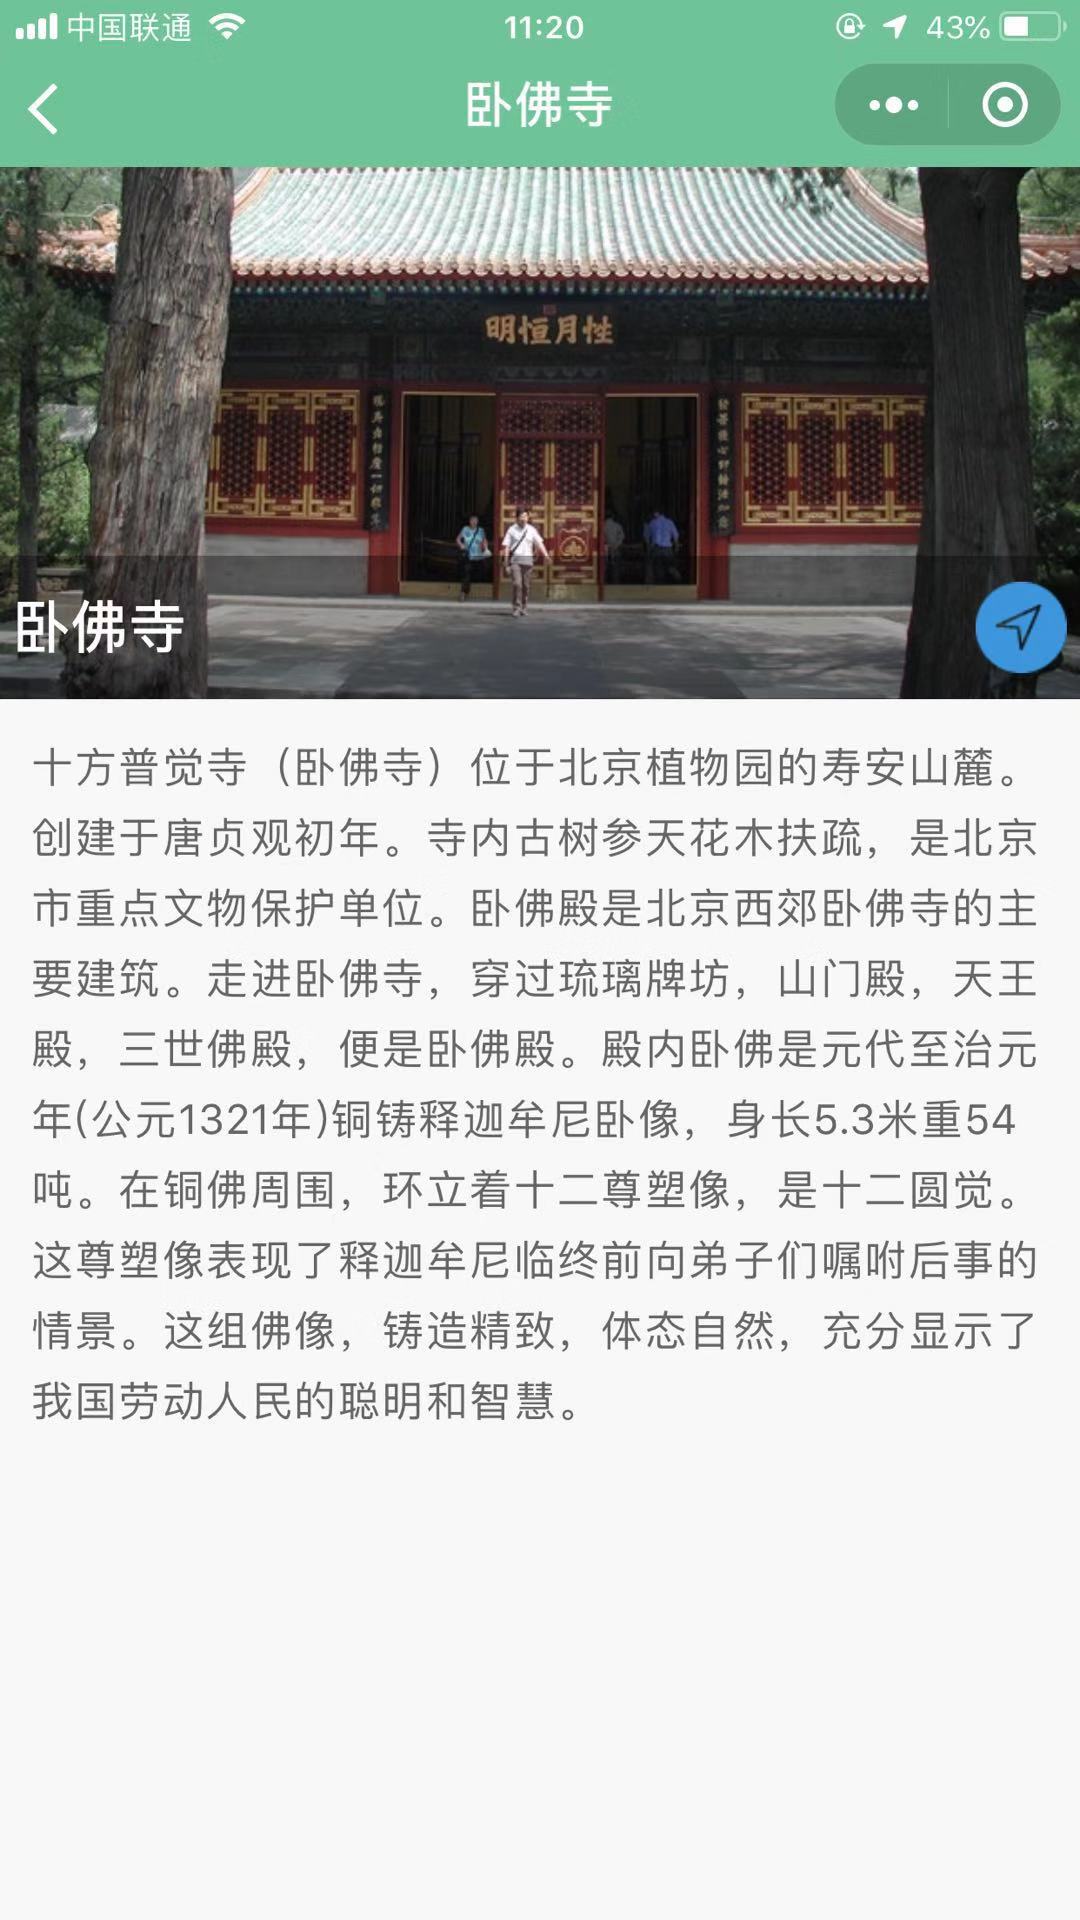 北京植物园导览_北京植物园导览小程序_北京植物园导览微信小程序